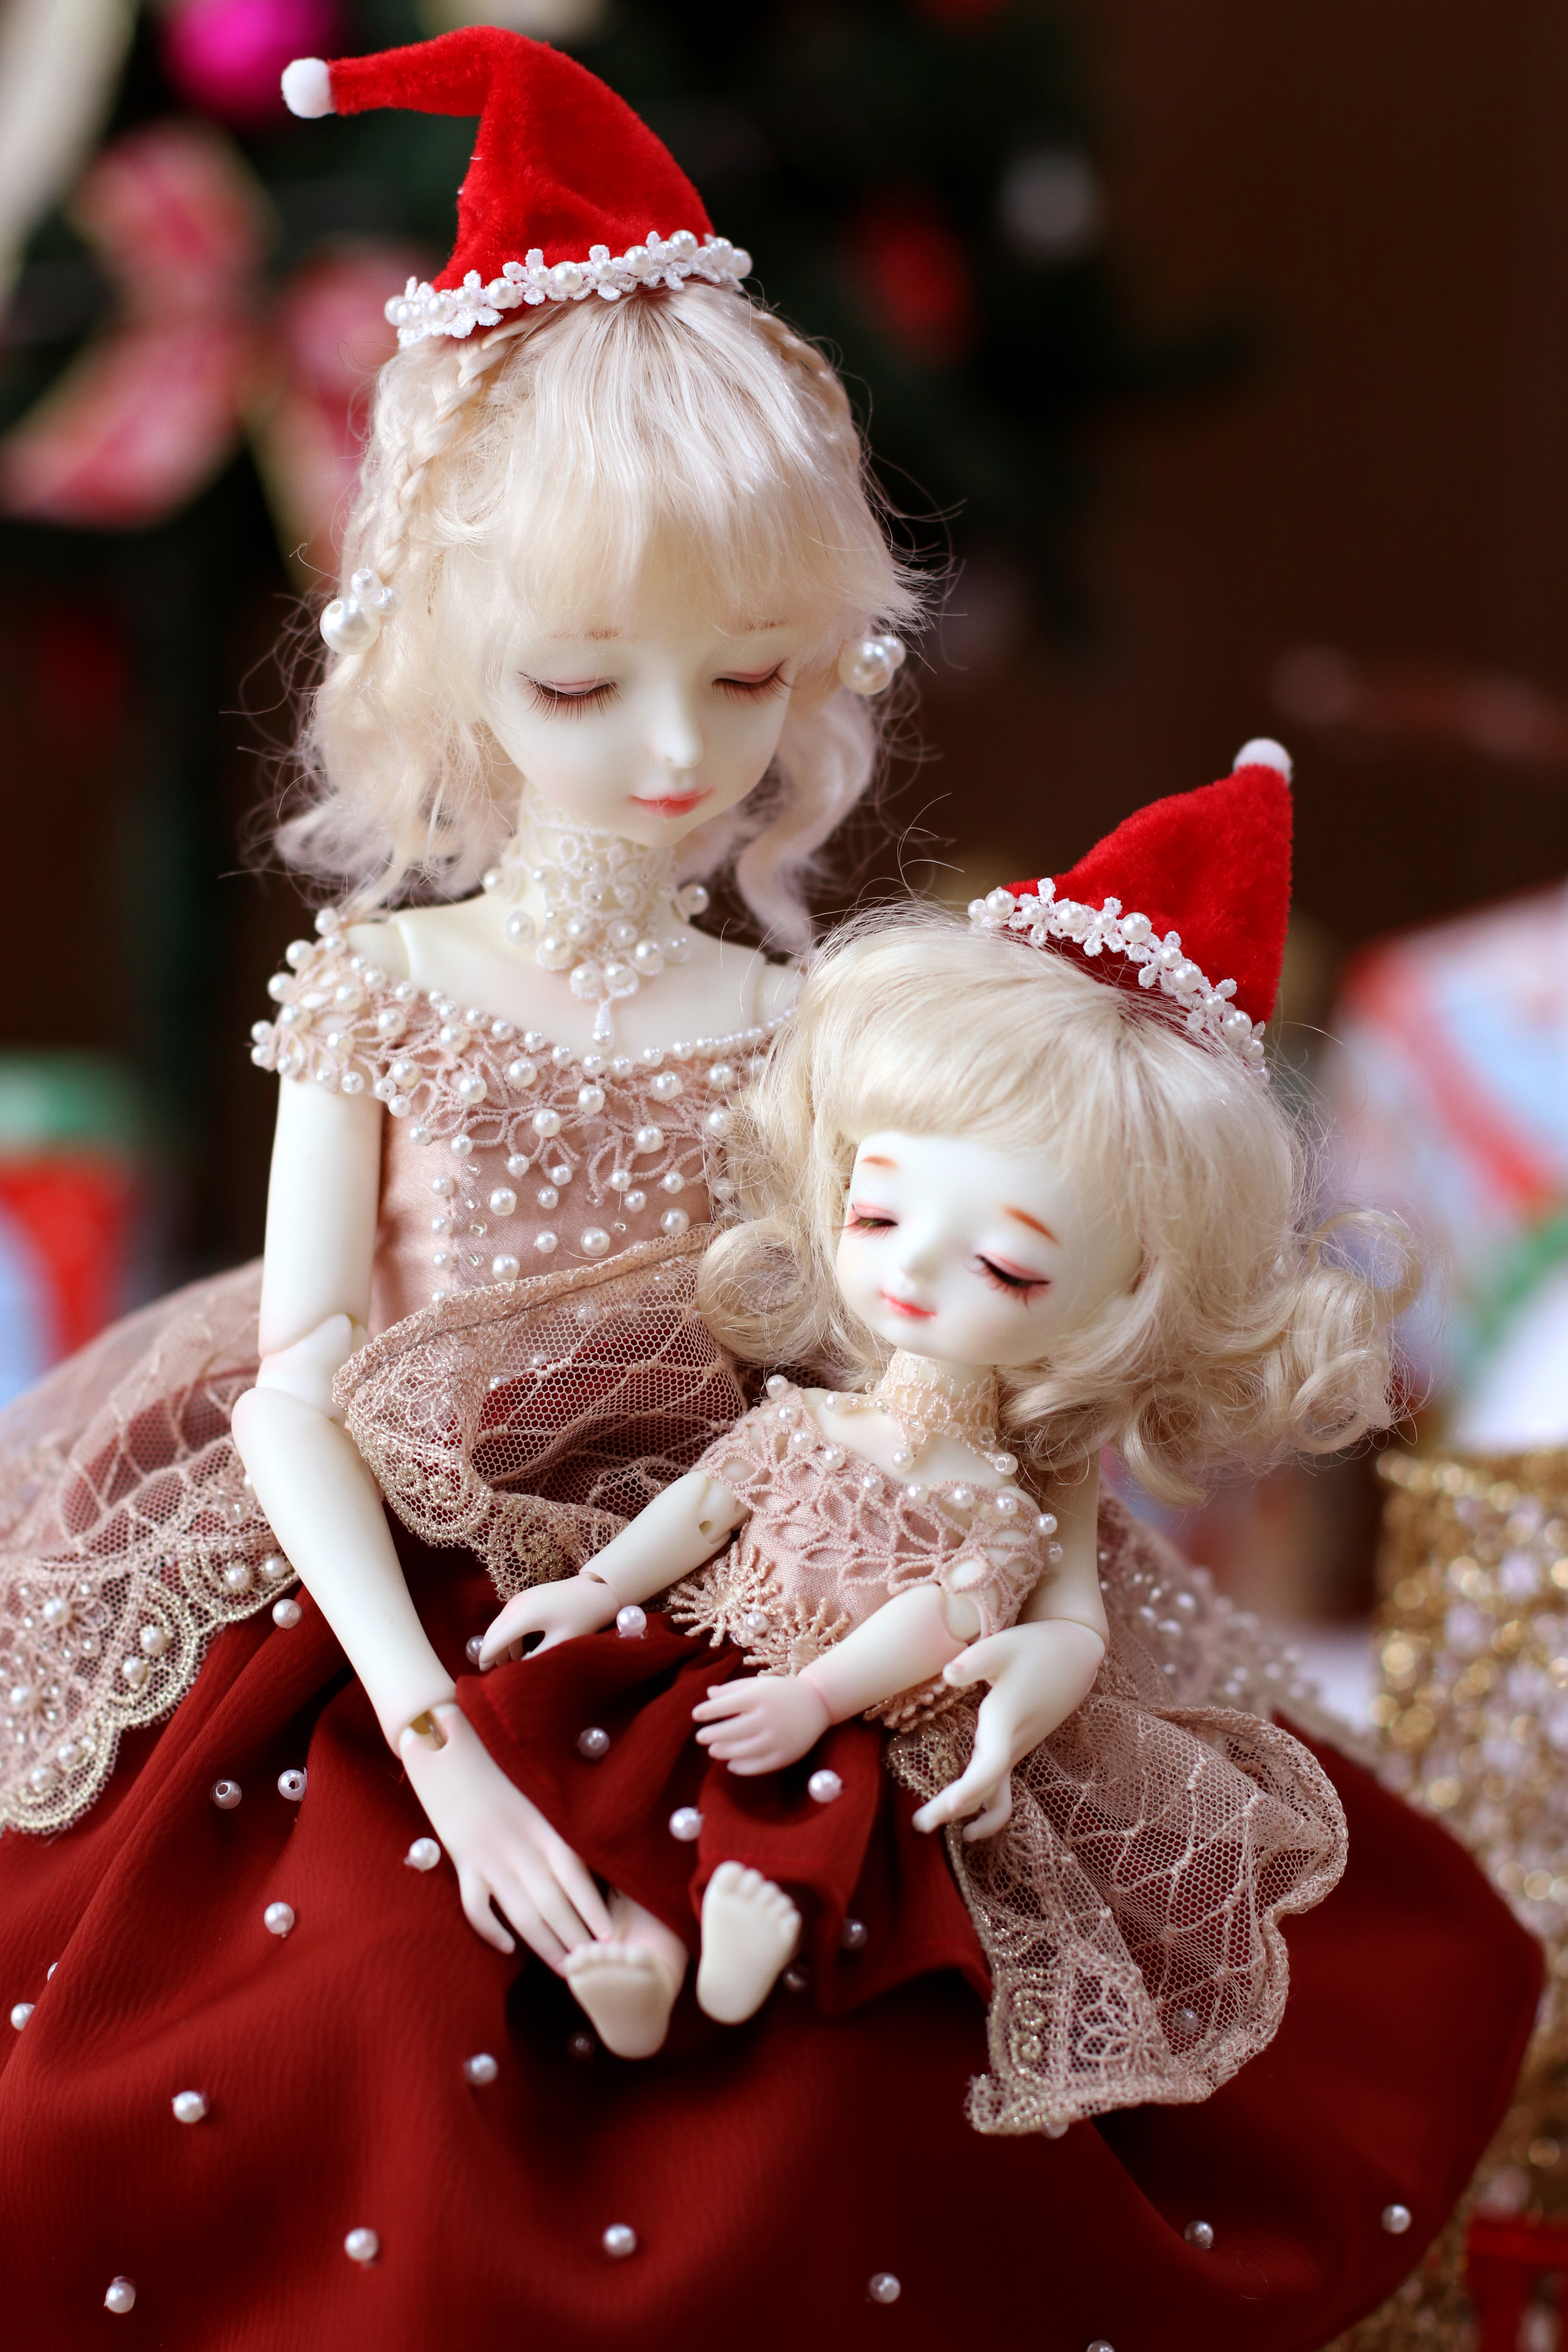 图片素材 : 白色, 花, 圣诞, 娃娃, 塑像, 守护天使, 毛绒玩具 2592x1944 - - 1288558 - 素材中国, 高清壁纸 ...